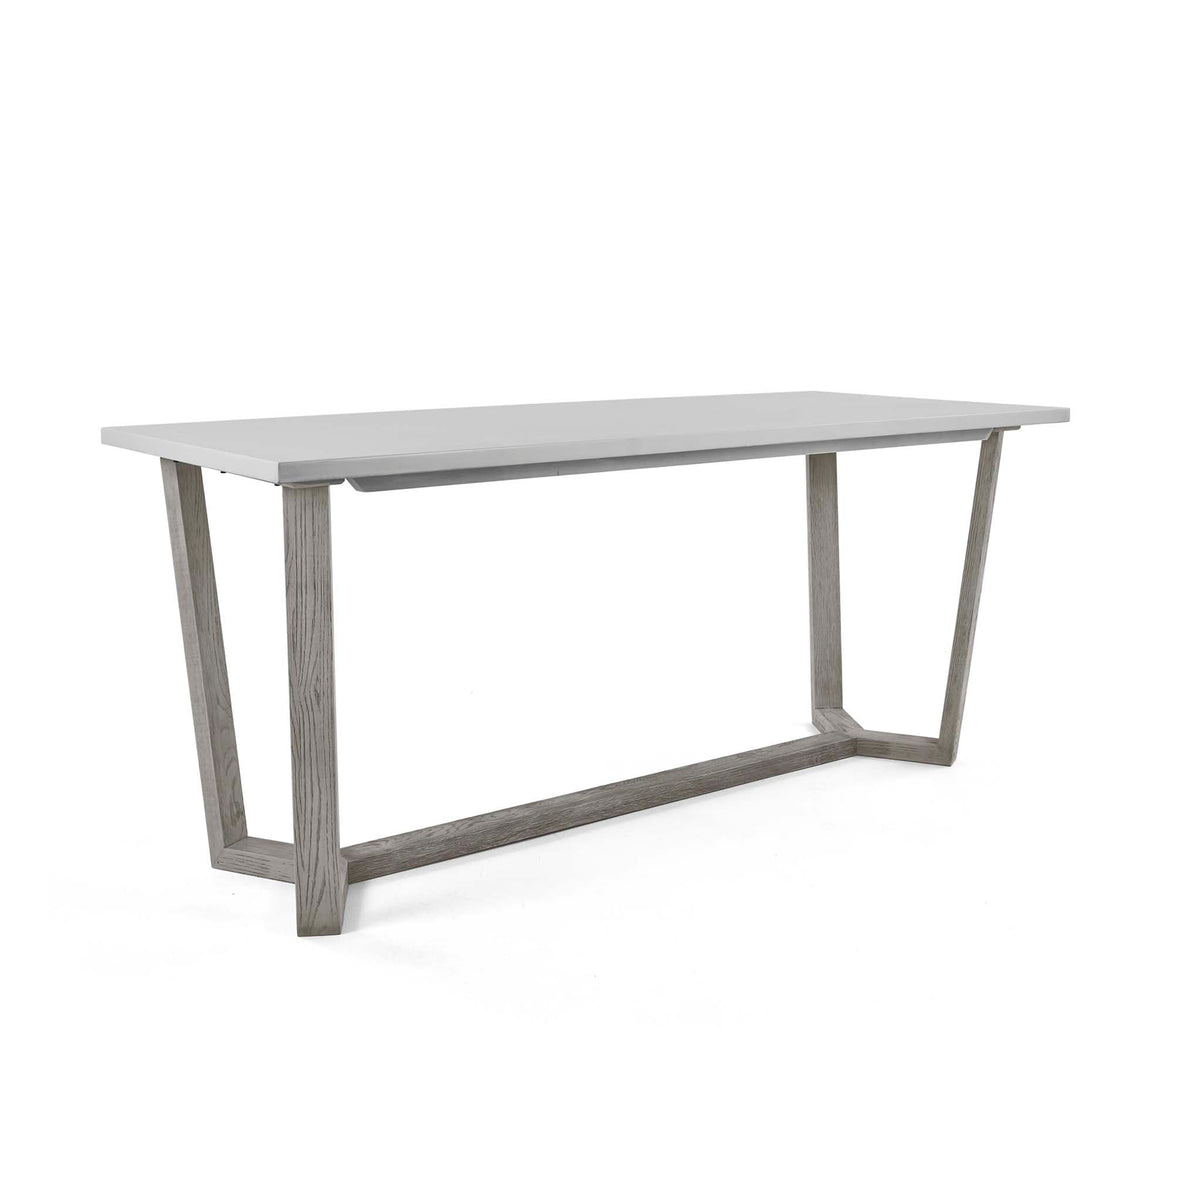 Epsom 150cm Rectangular Dining Table from Roseland Furniture